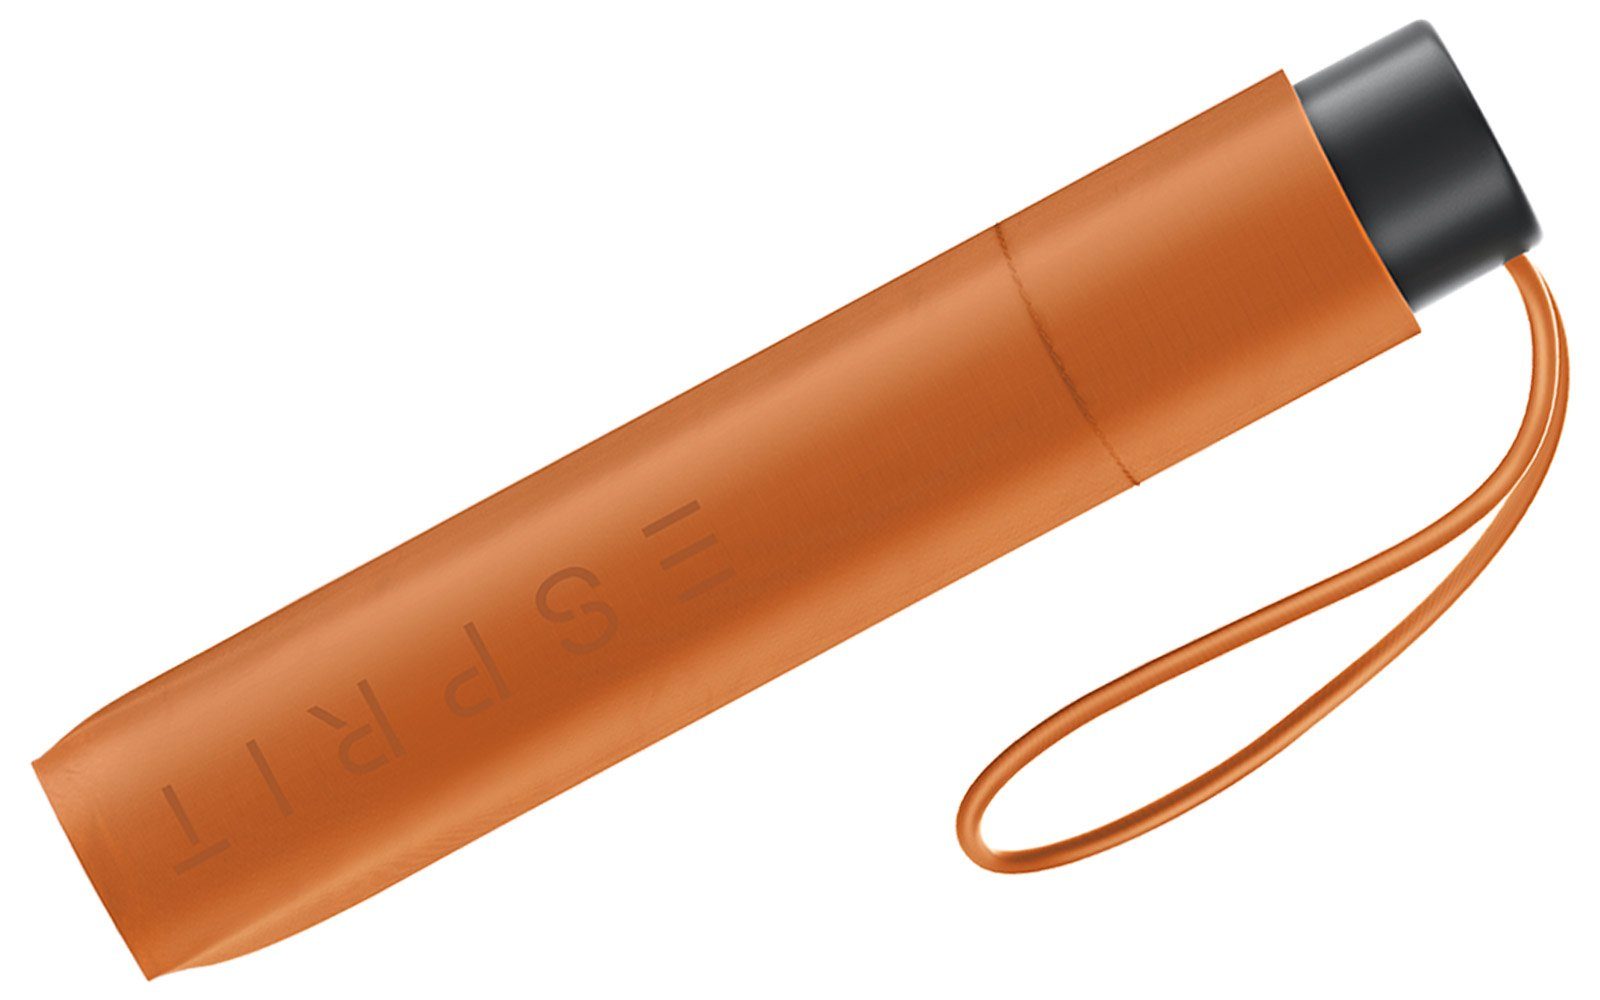 Damen Mini orange, 2022 Taschenregenschirm - Slimline in den burnt HW neuen sehr Esprit Trendfarben leicht,